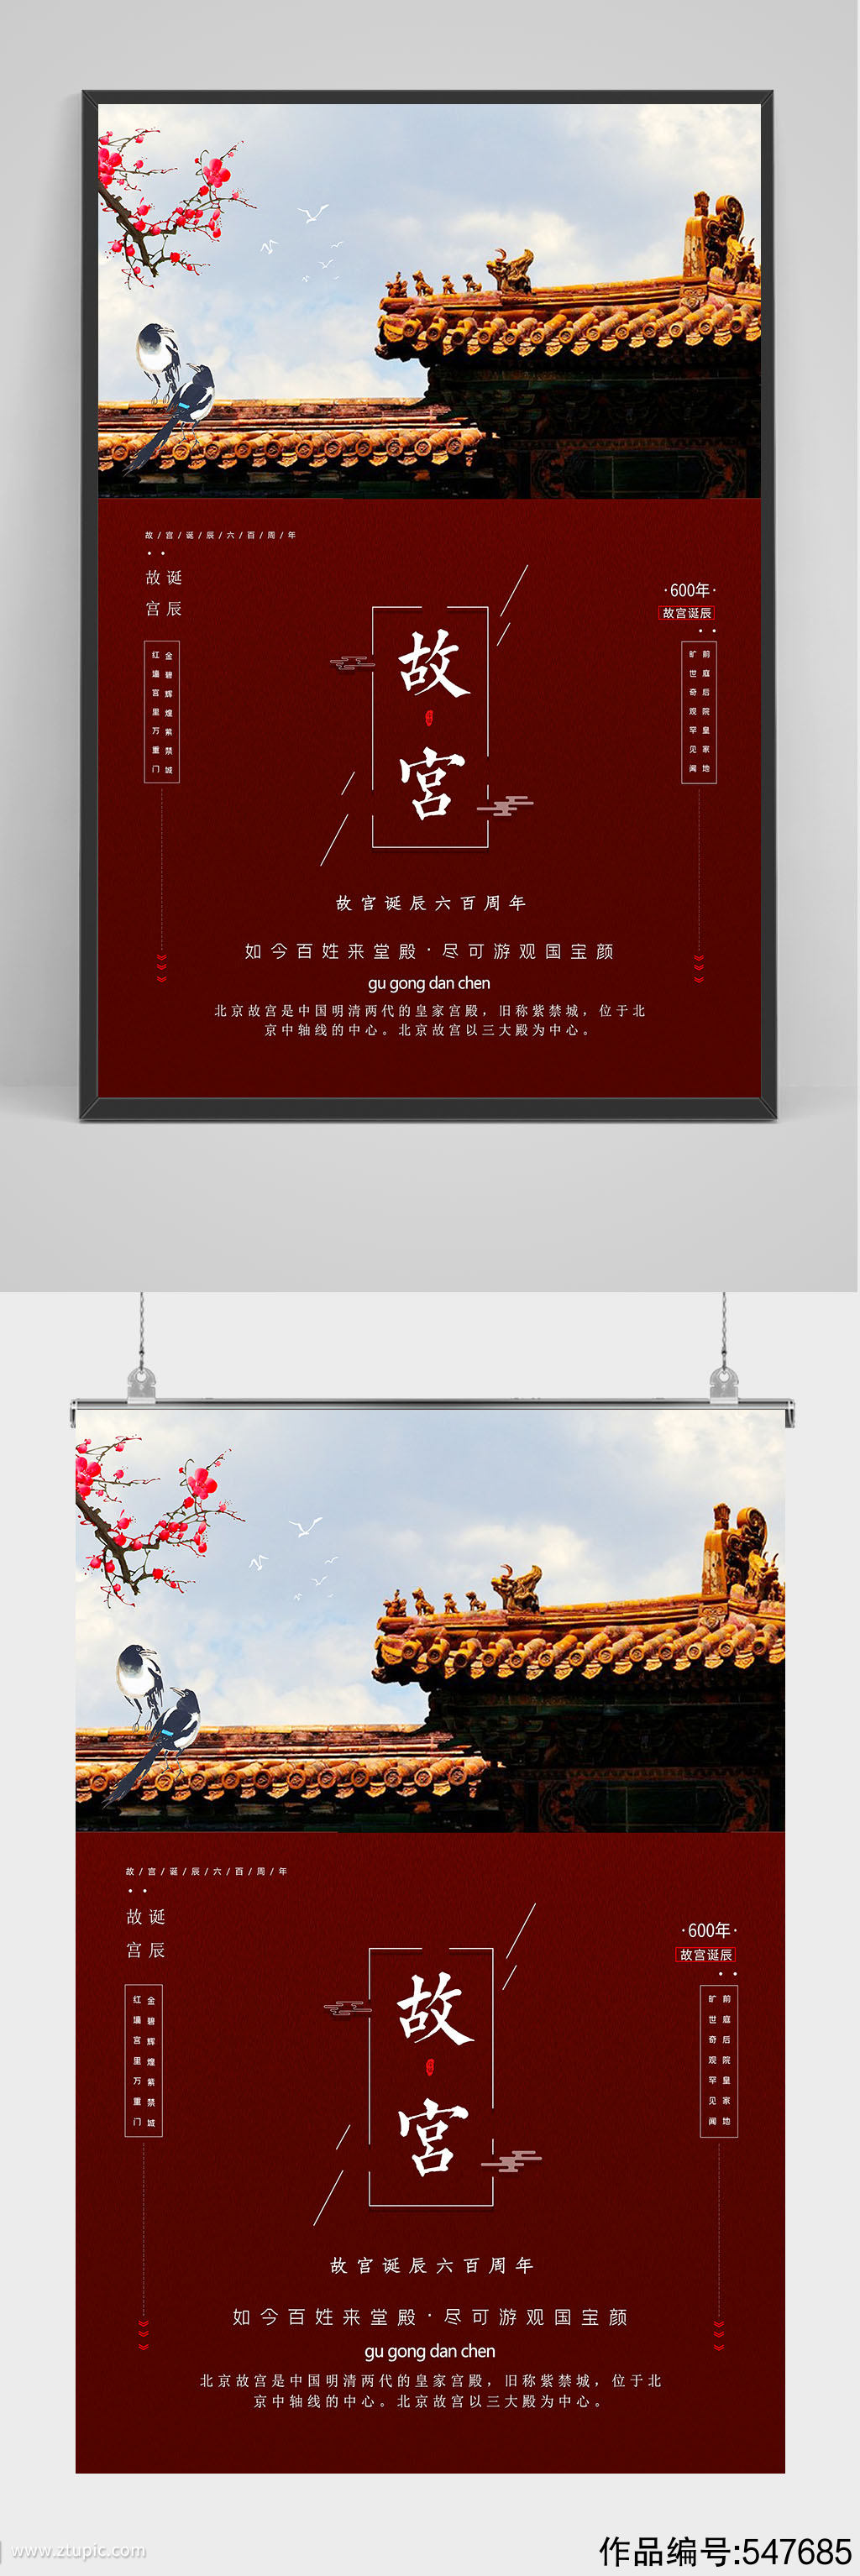 精品红色故宫旅游海报设计